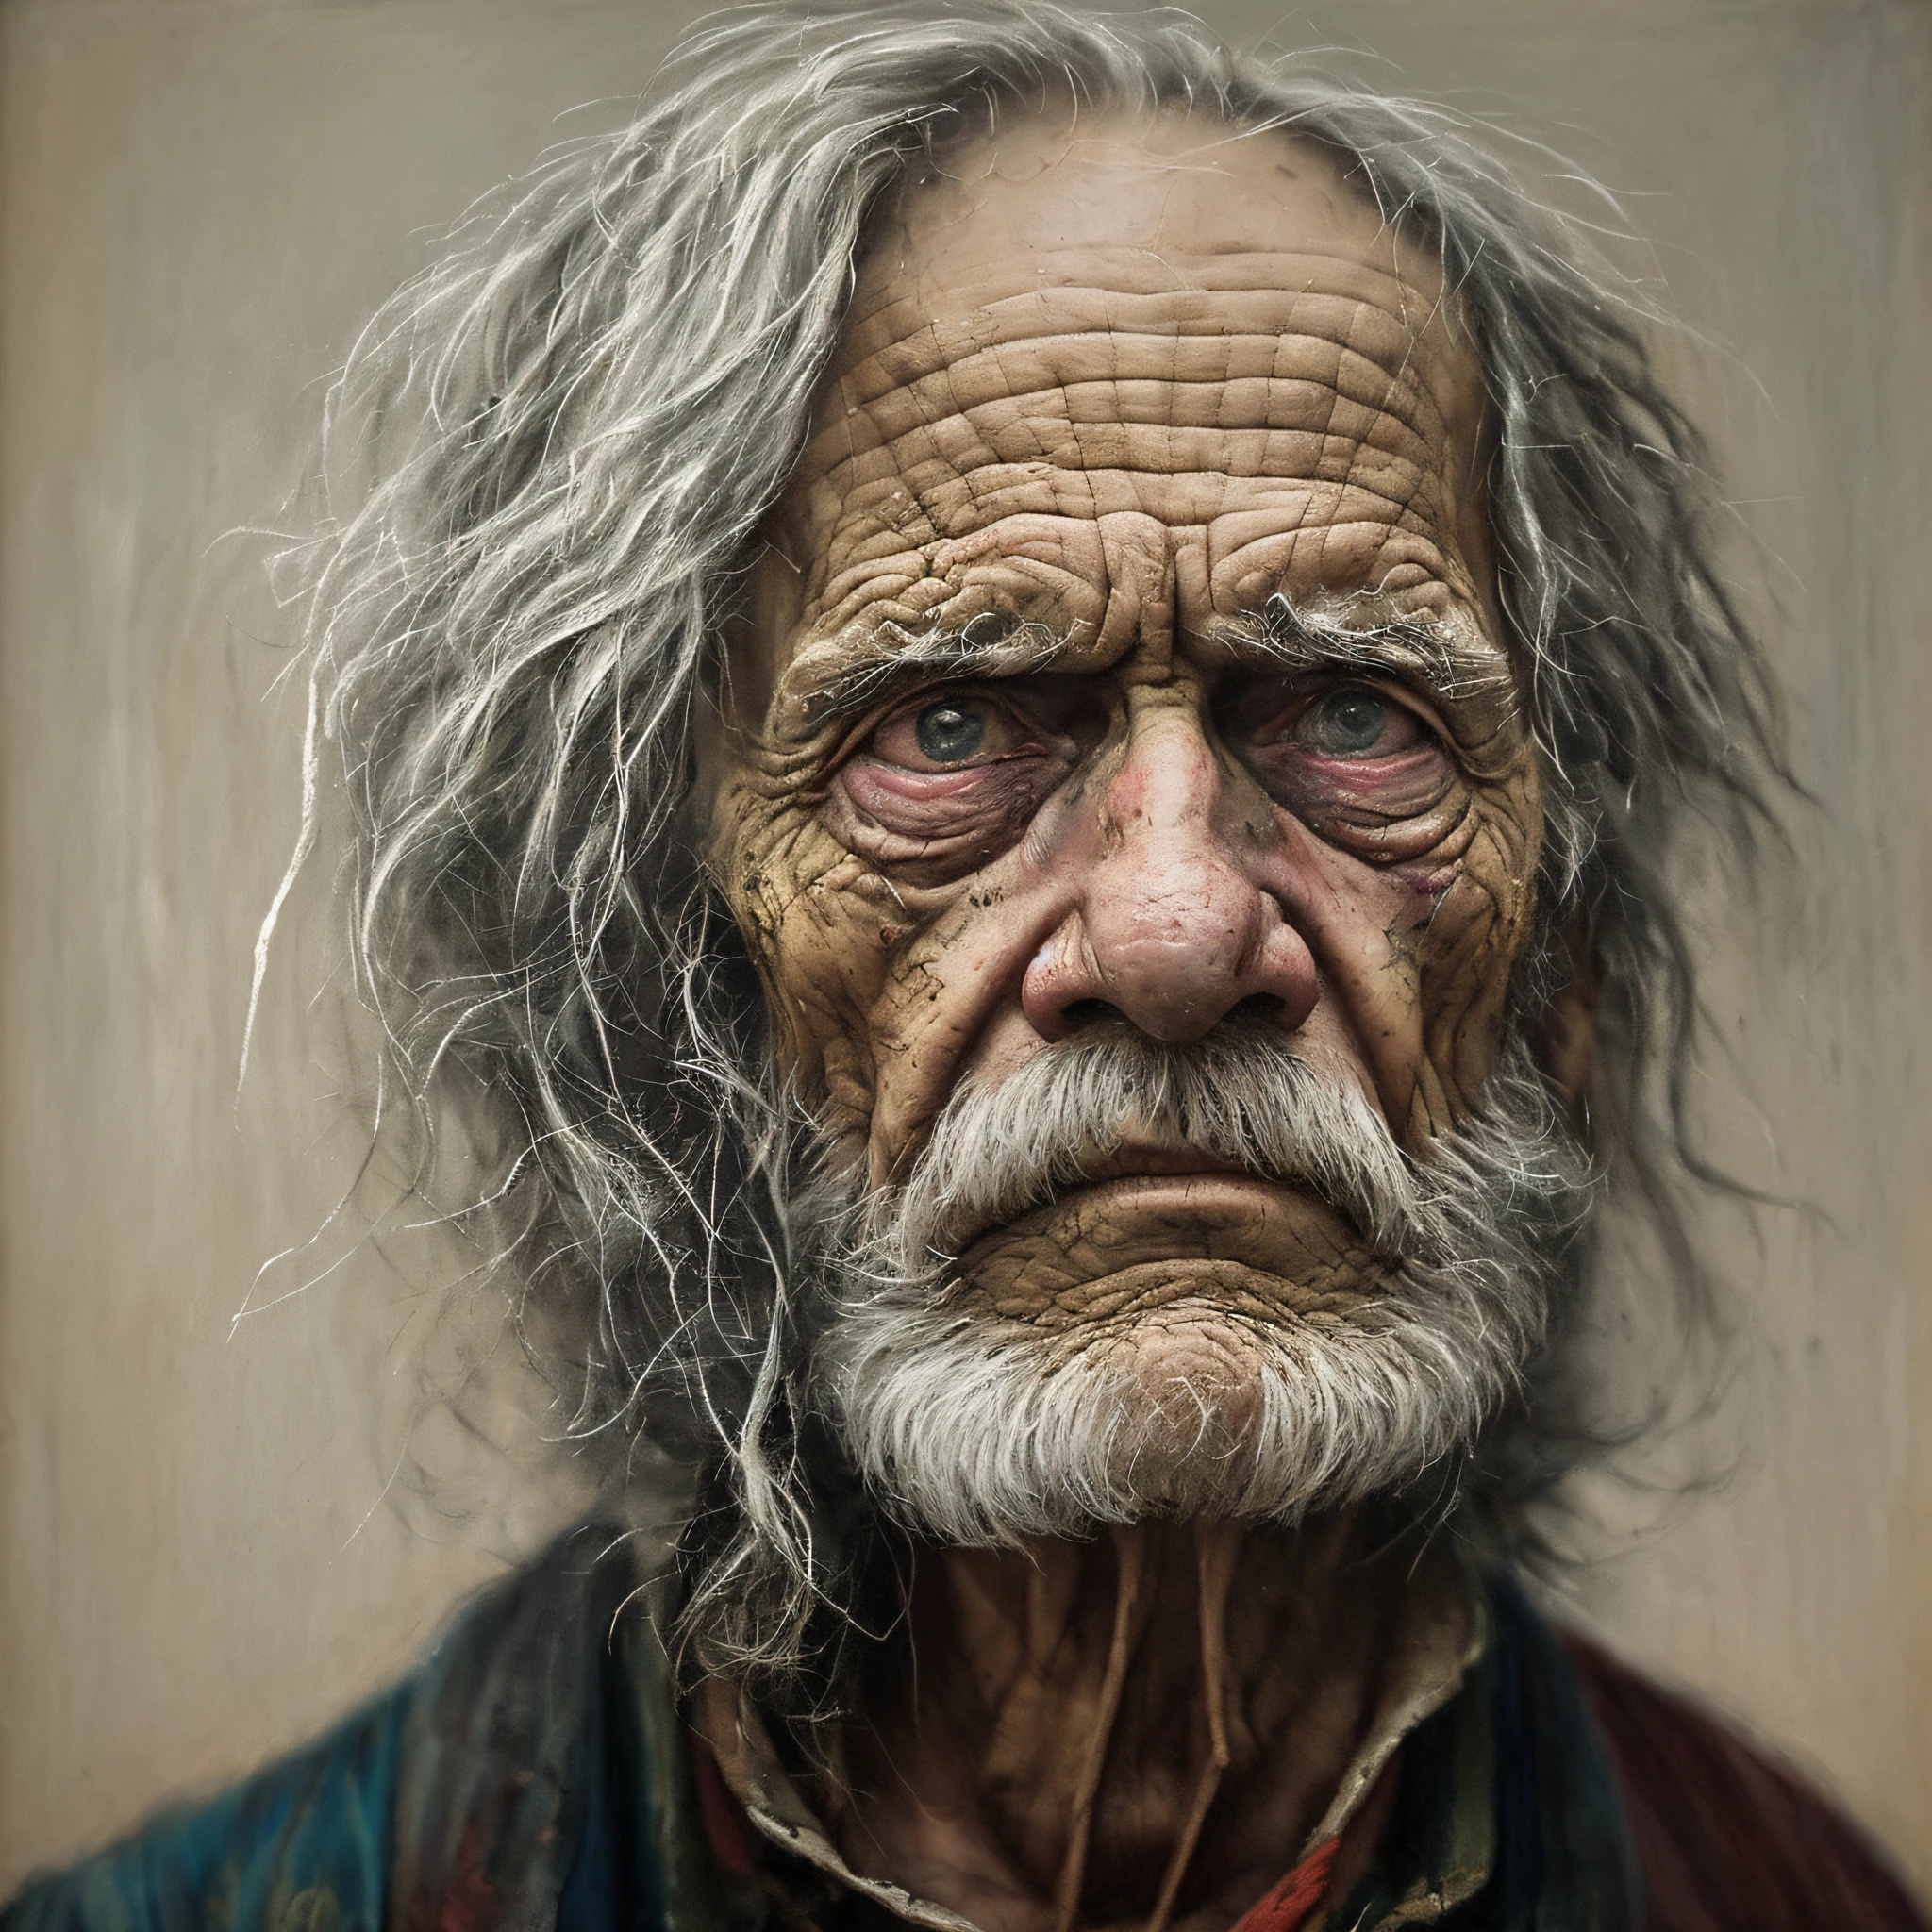 Un portrait d&#39;un pauvre soldat américain de 1800 ans en haillons, ((fatigue accablante )), rides de l&#39;âge, art conceptuel, peinture au pastel à l&#39;huile , couleurs gris maussades , graveleux, style désordonné d&#39;Alexey Savrasov, Ivan Chichkine, Ilya Répine, (cel shader:1.2), 2j, (peinture à l&#39;huile:1.2) très détaillé